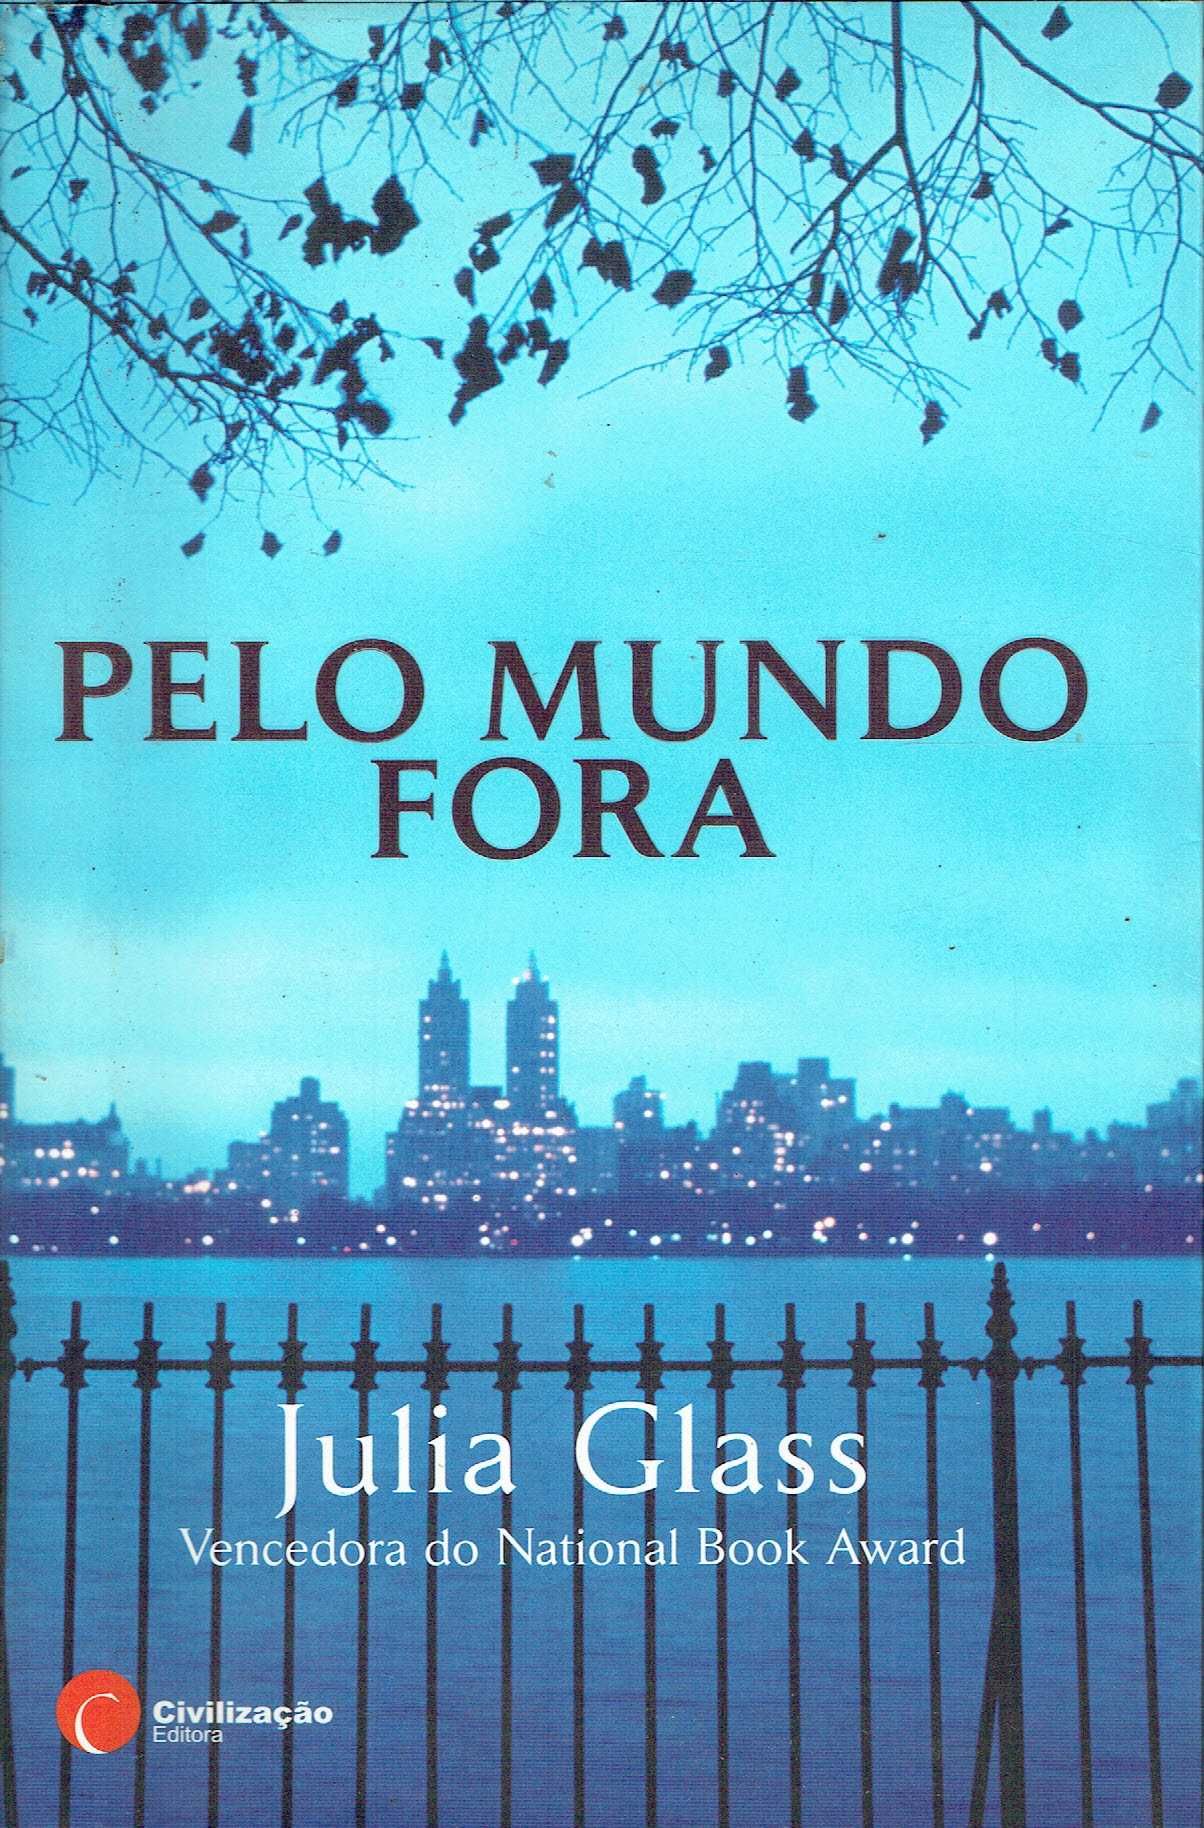 15323

Pelo Mundo Fora
de Julia Glass